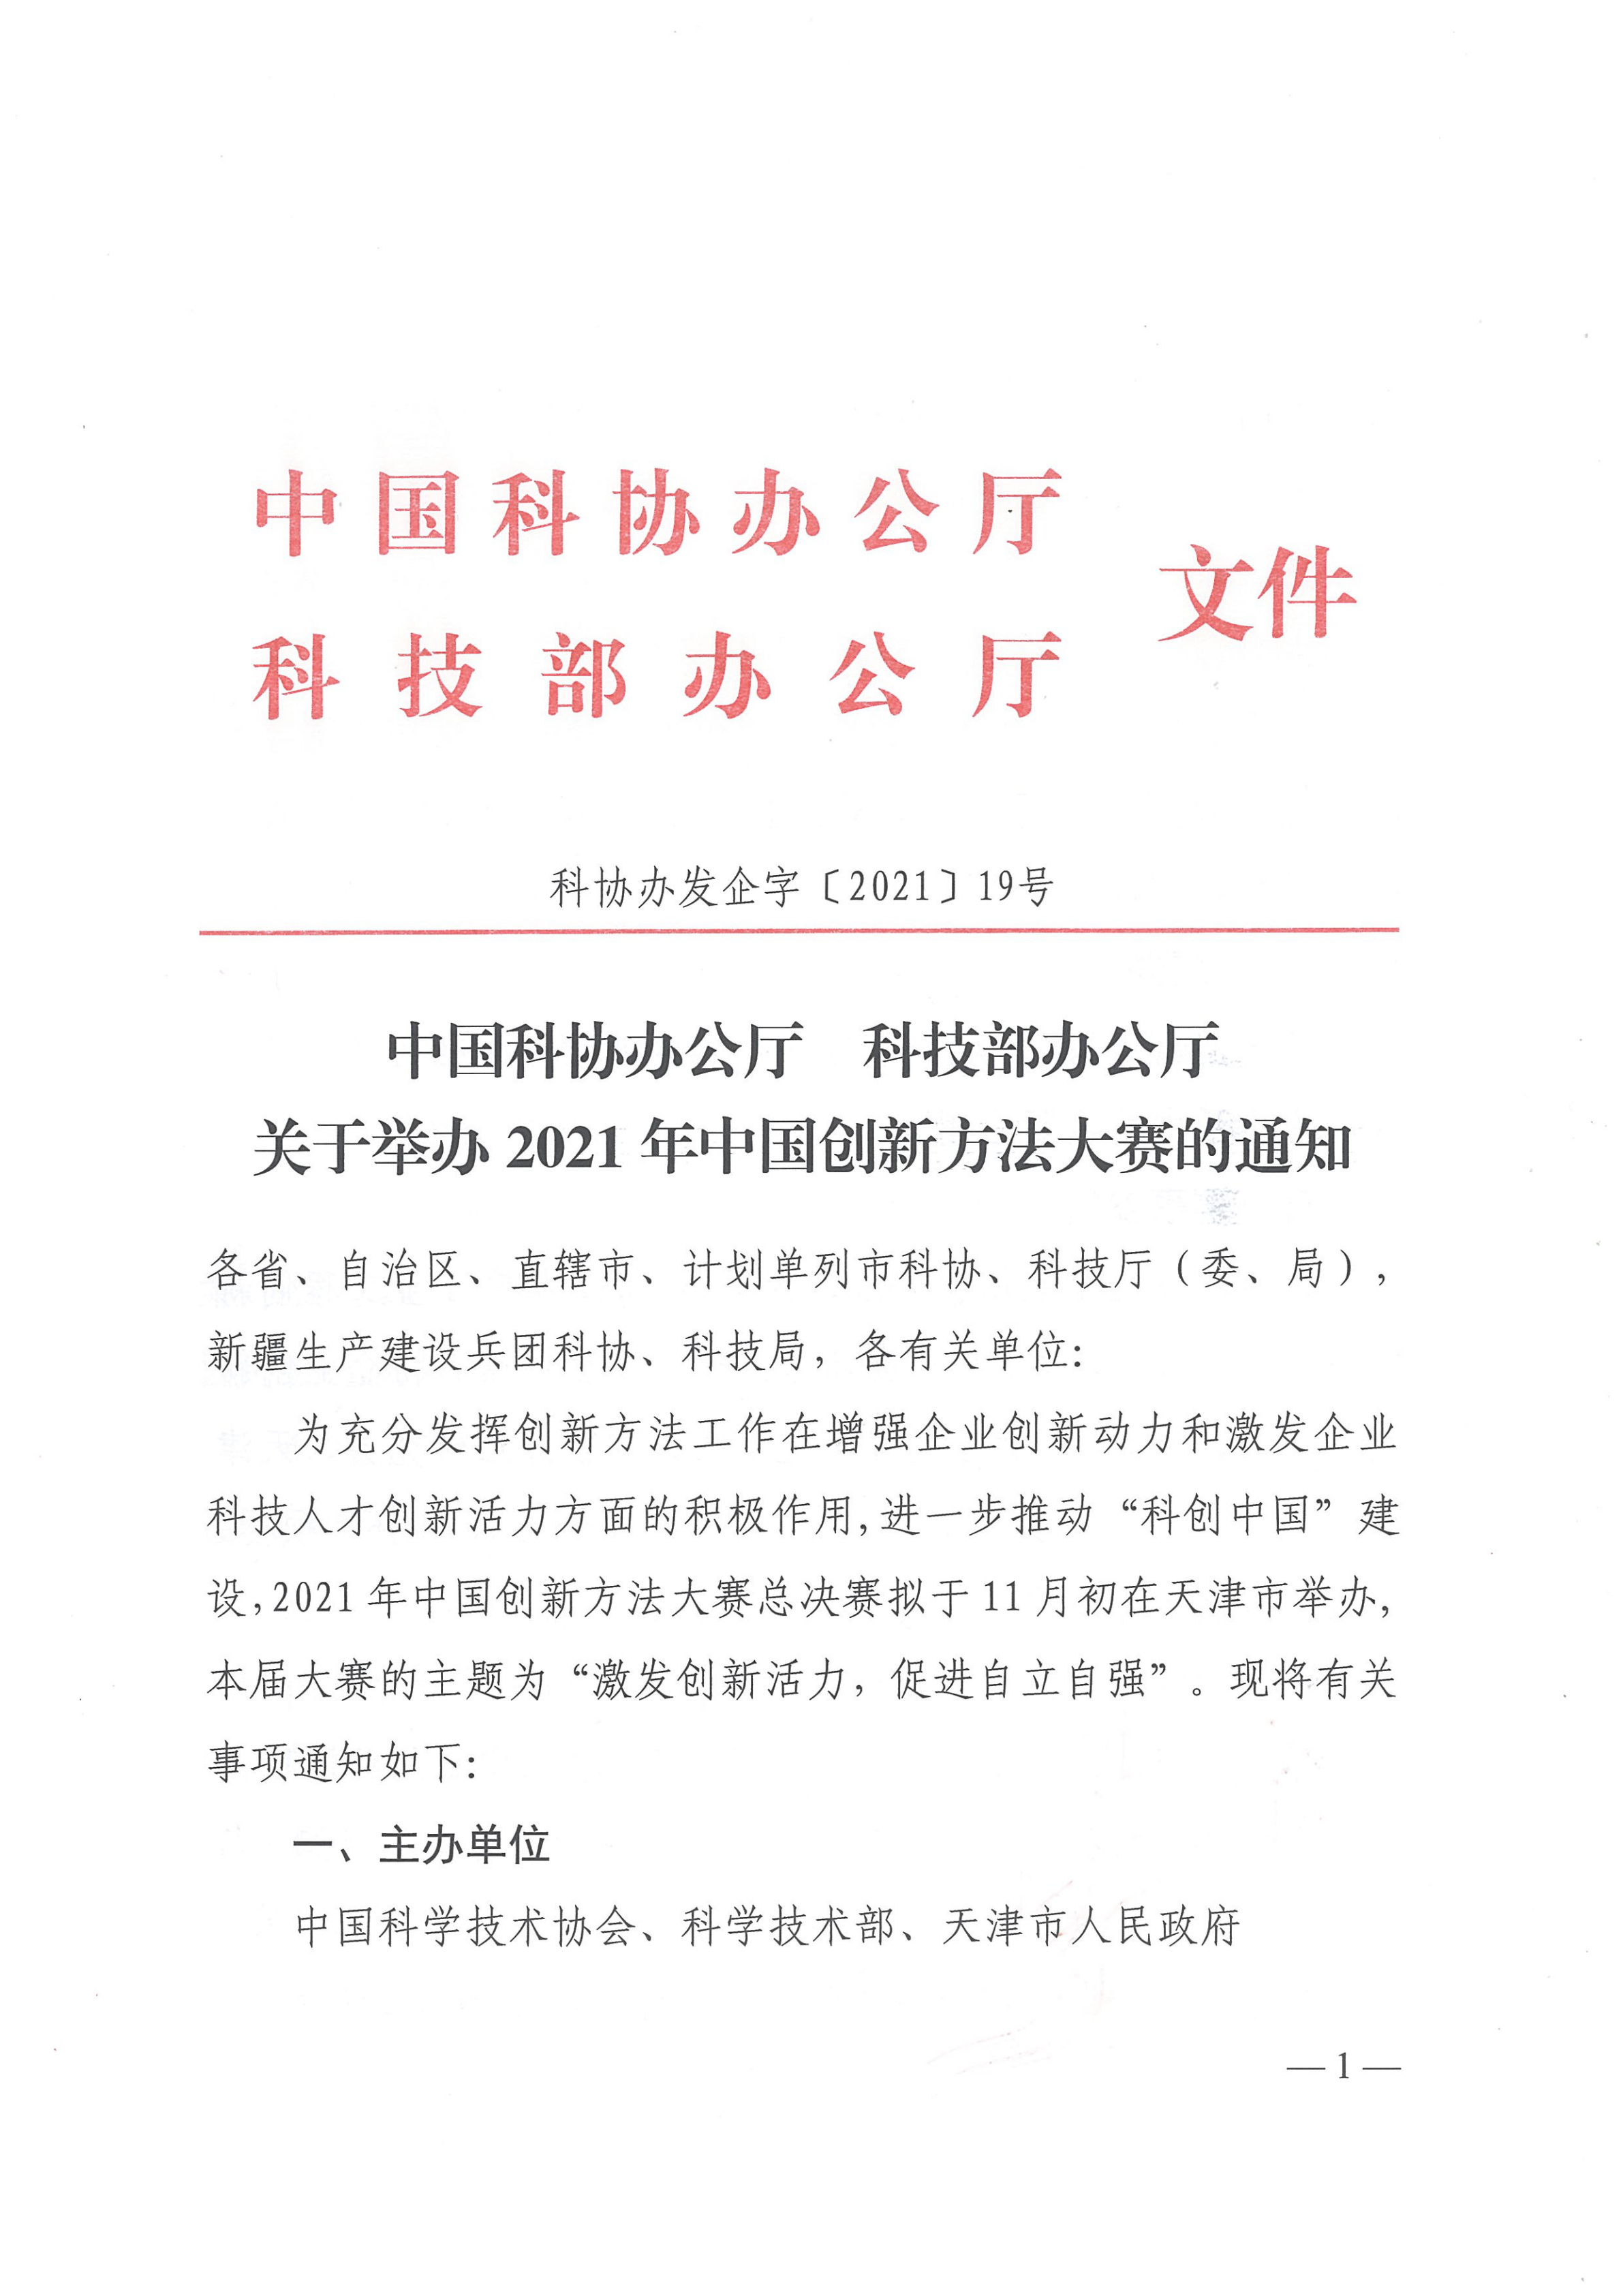 2_1_2021年中国创新方法大赛通知_00.png